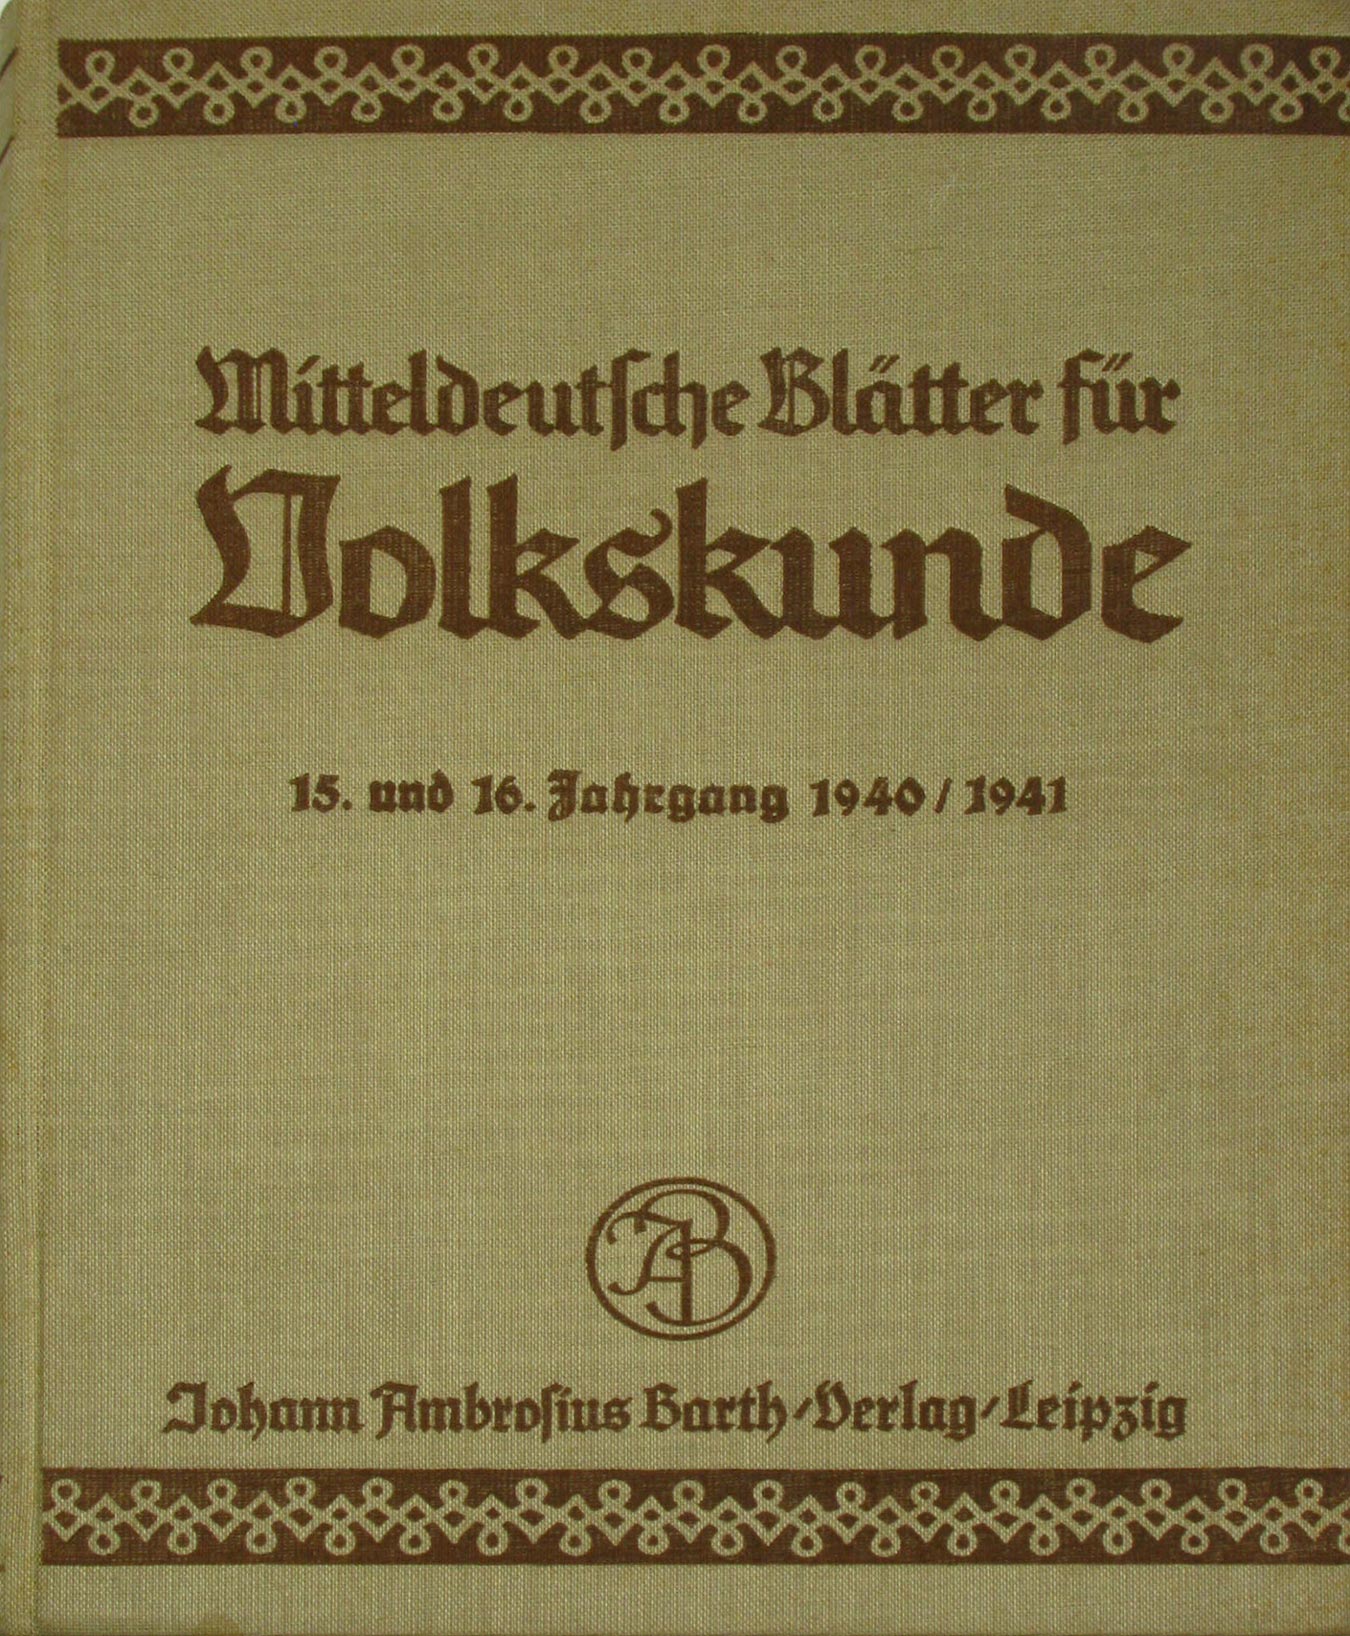   Mitteldeutsche Blätter für Volkskunde (15. und 16. Jahrgang 1940/1941) 